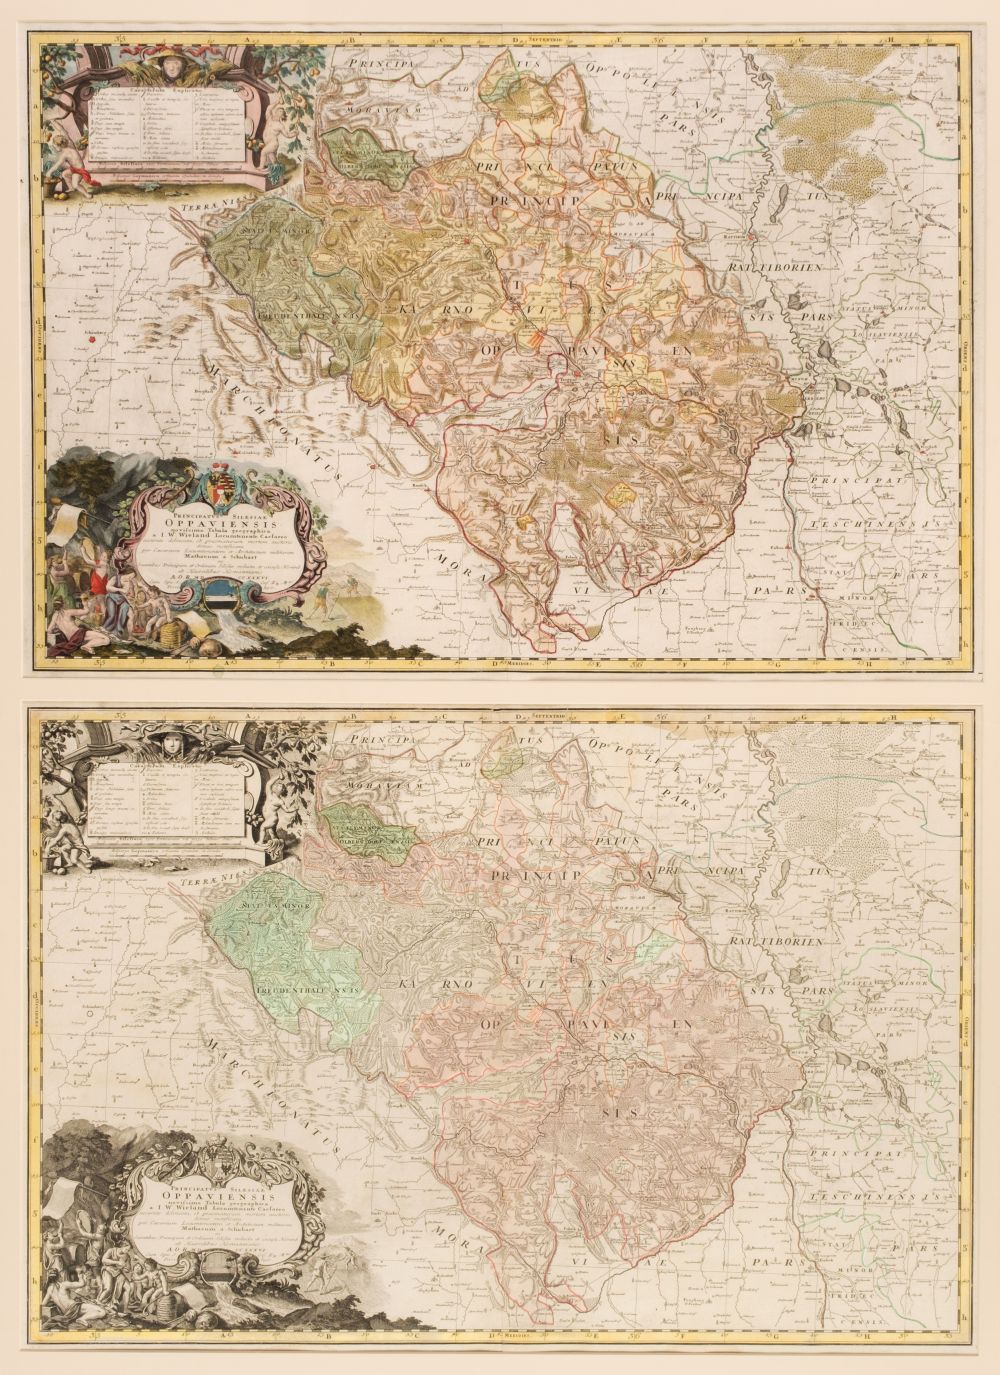 * Silesia. Homann (J. B. heirs of), Principatus Silesiae Oppaviensis, circa 1750